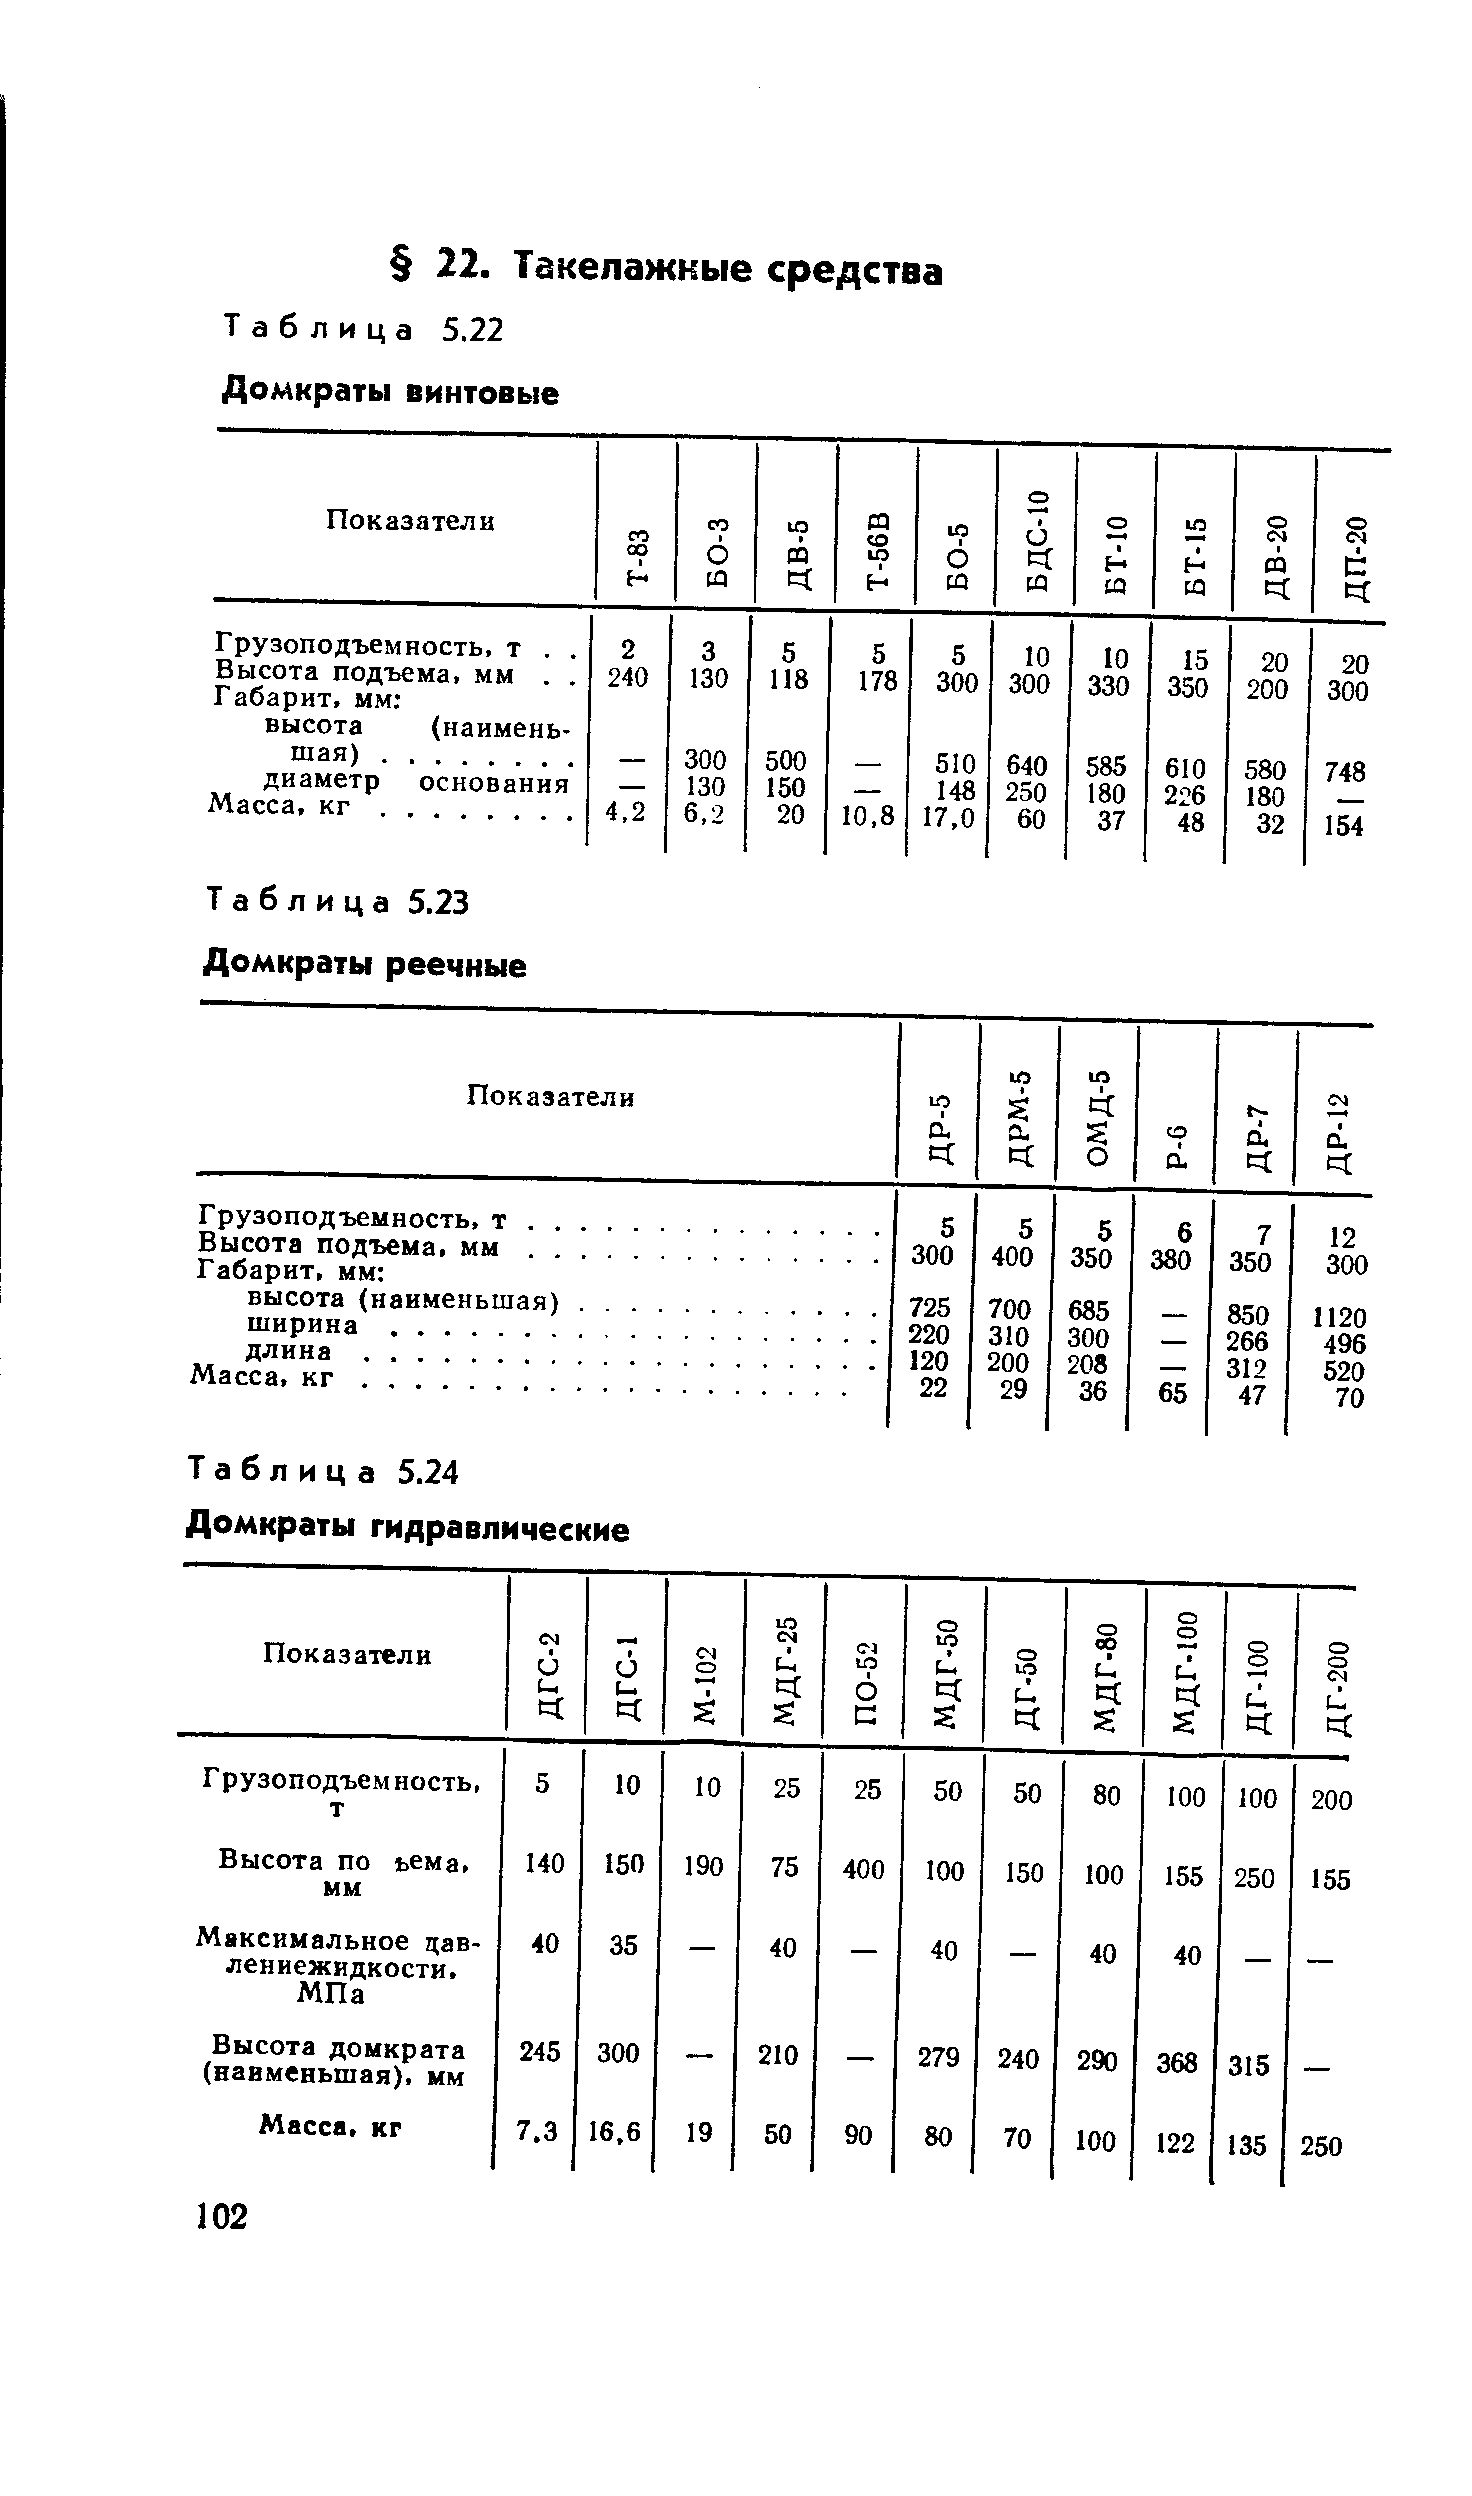 Таблица 5.23 Домкраты реечные
